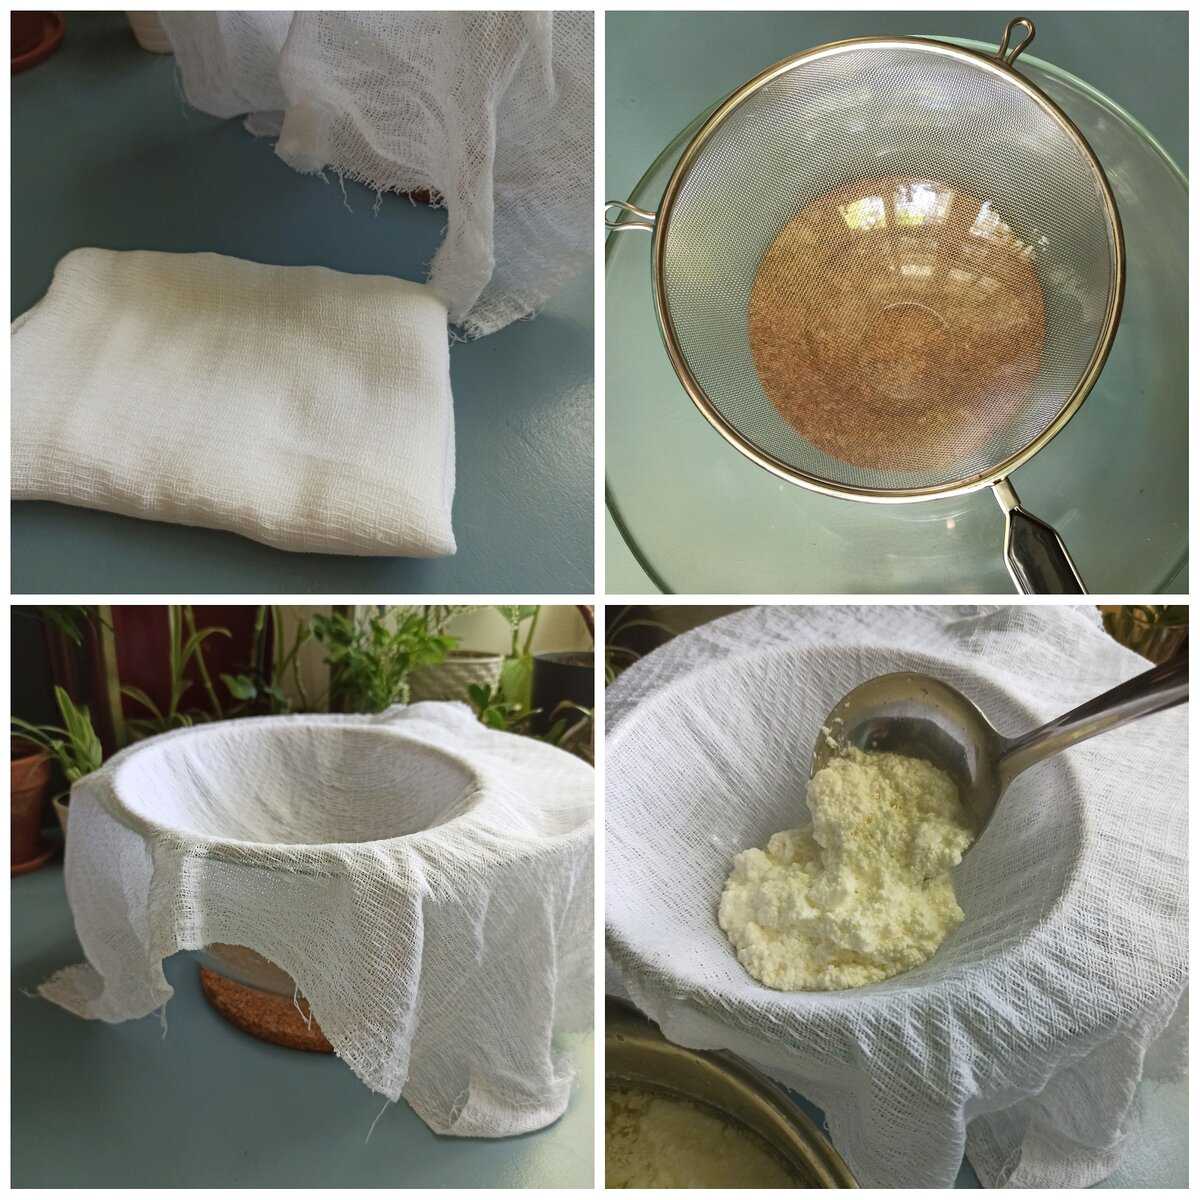 Домашний творог: как сделать из молока, кефира в домашних условиях? фото рецепт